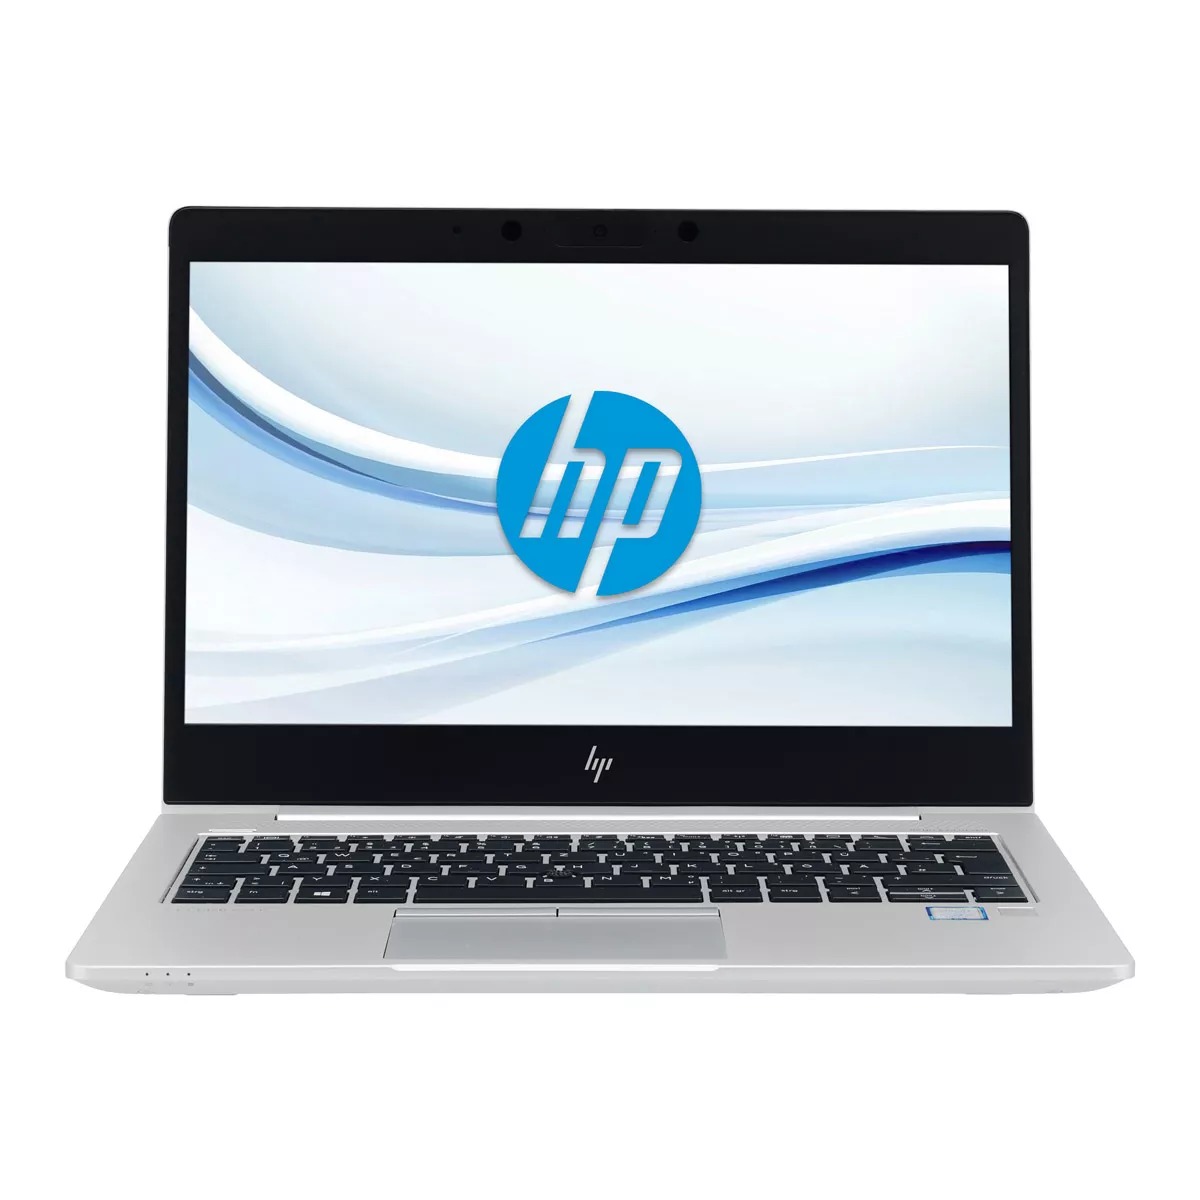 HP EliteBook 830 G5 Core i7 8550U 1,80 GHz 240 GB M.2 SSD Webcam A+